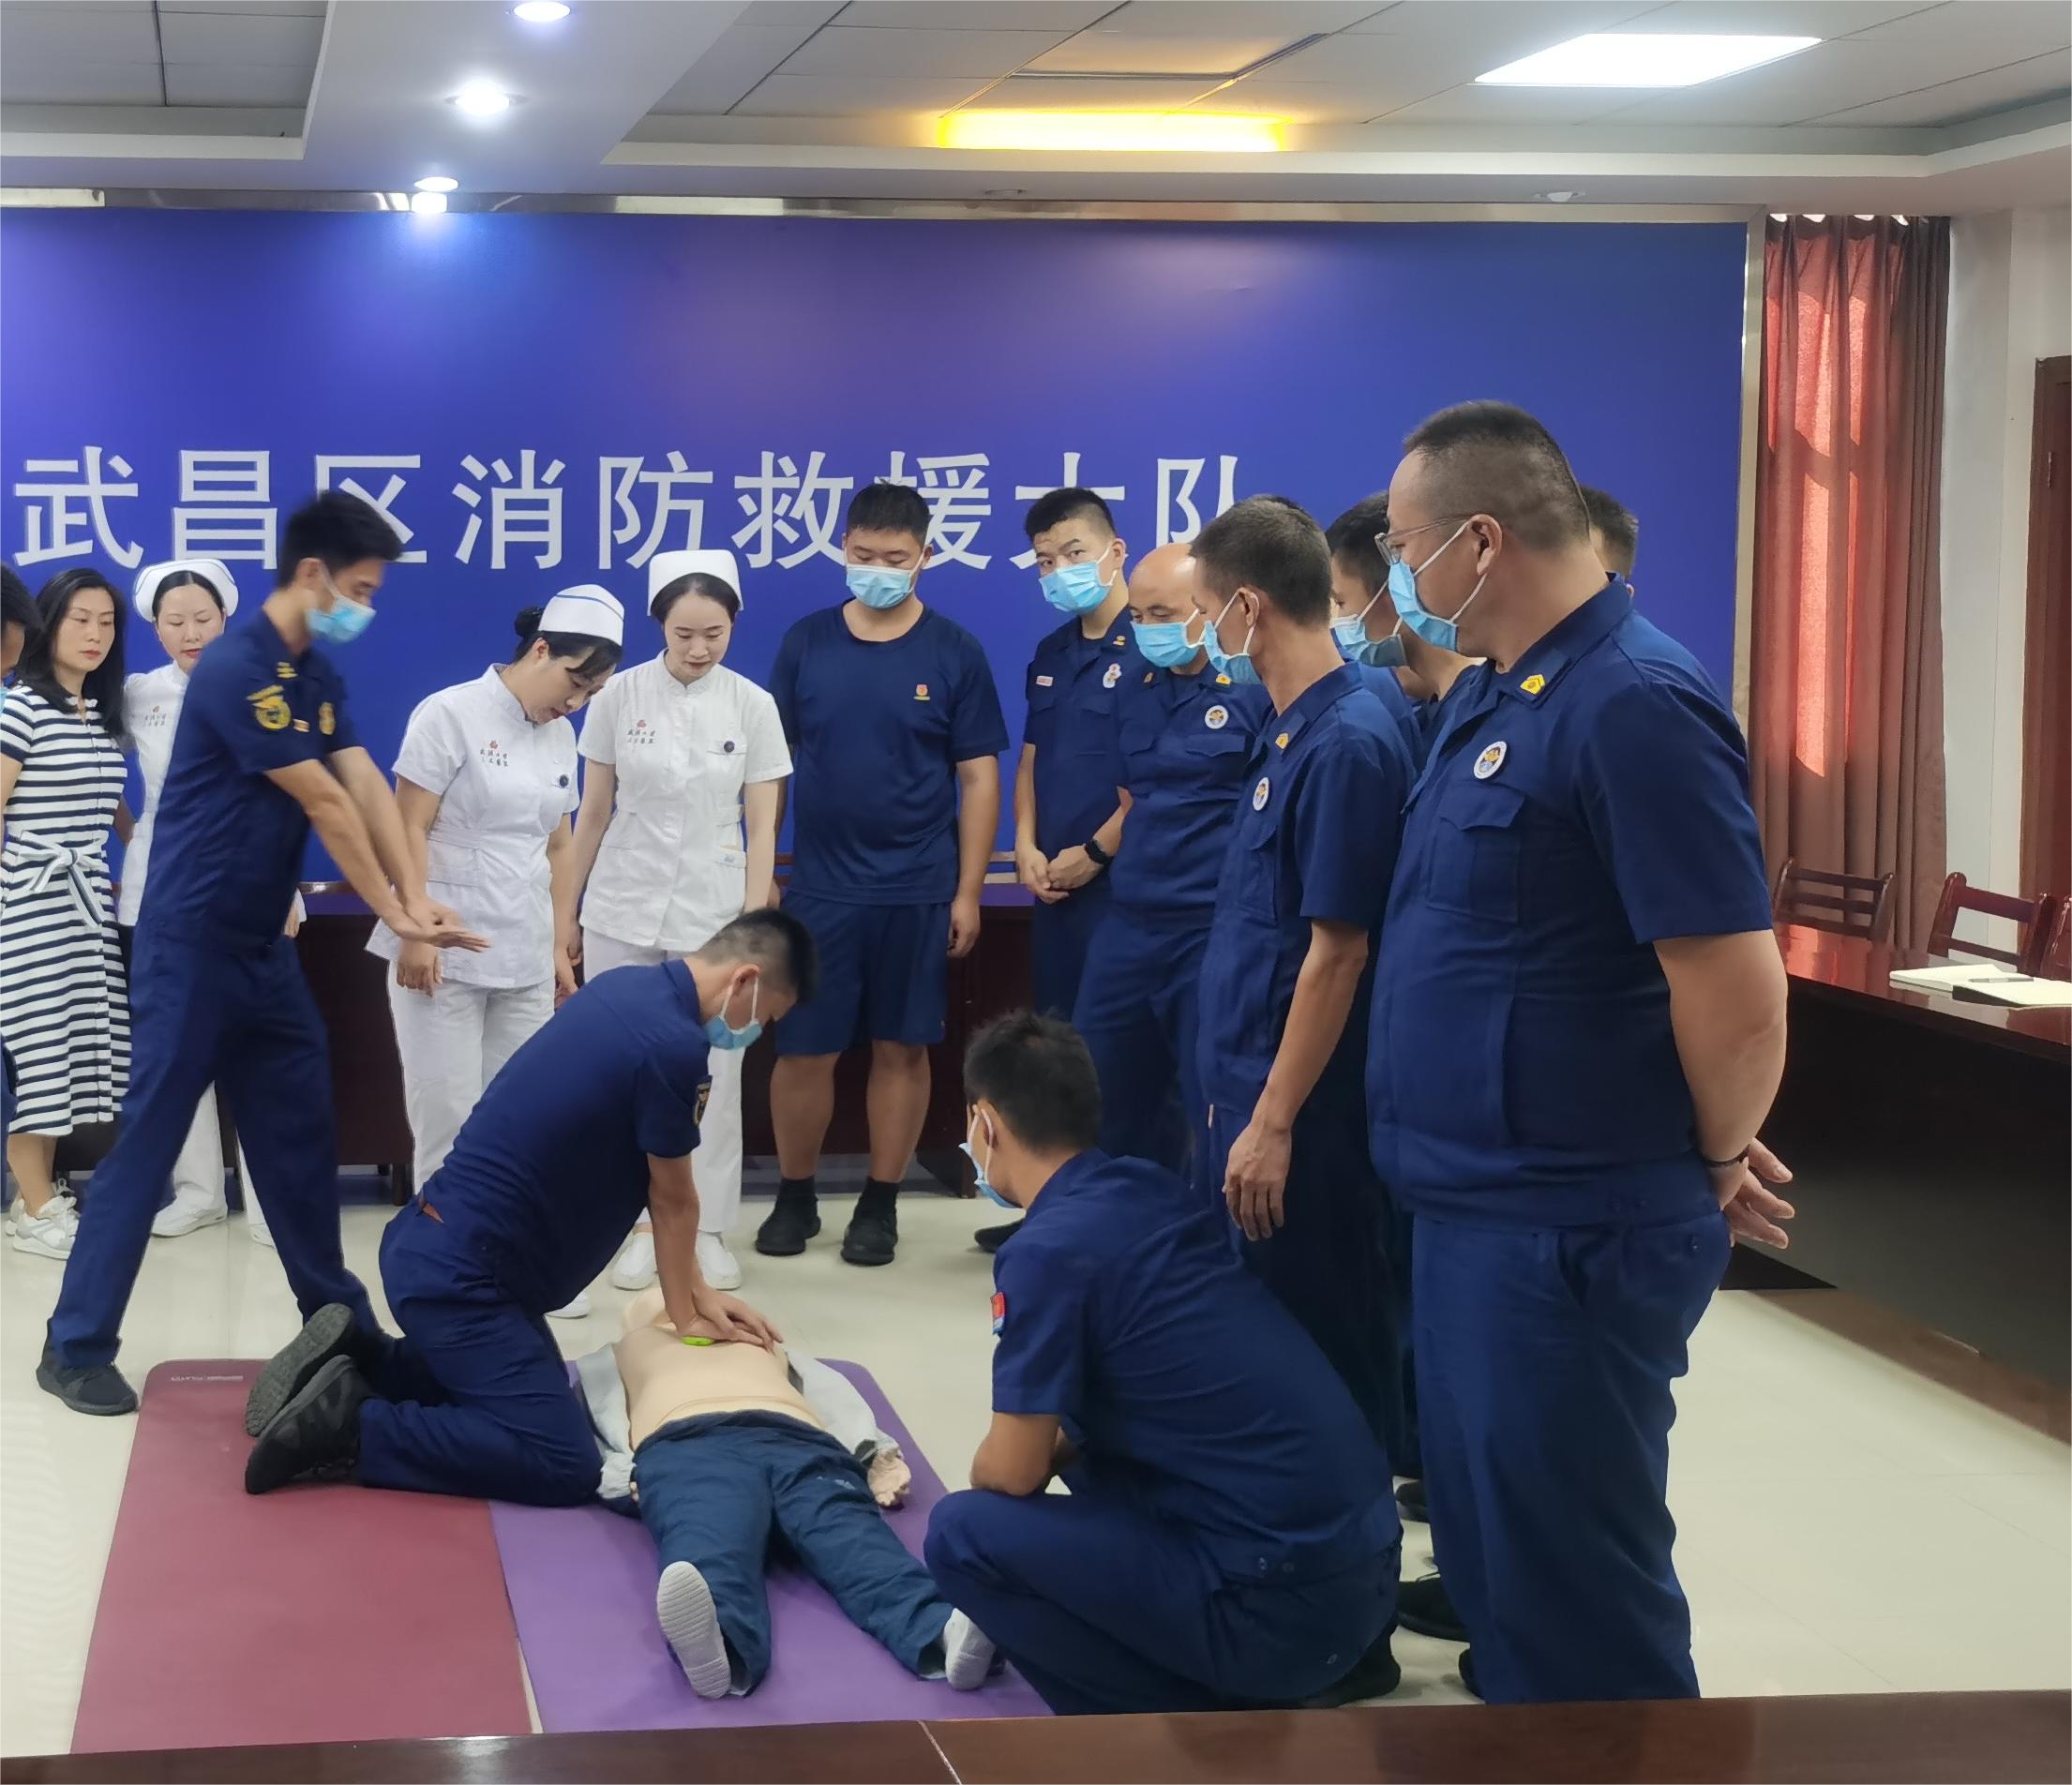 当「天使白」遇到「火焰蓝」——武汉大学人民医院「天使在身边」小分队为消防员开展急救技能公益培训